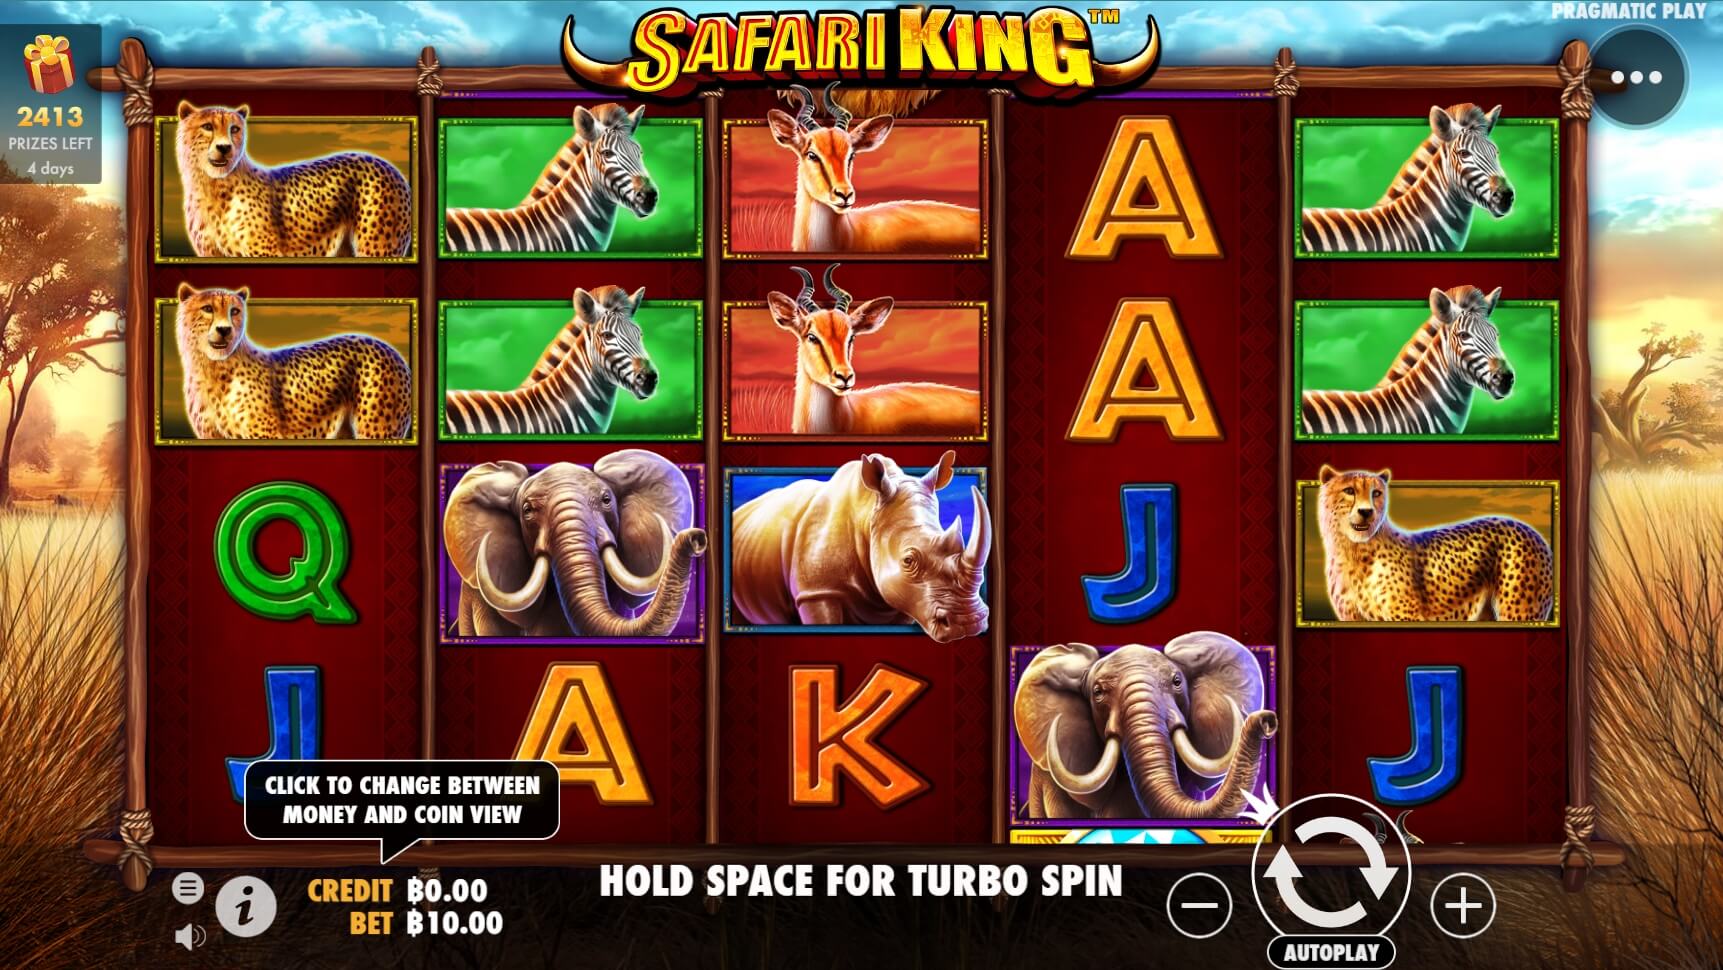 Safari King Pragmatic Play สล็อต xo